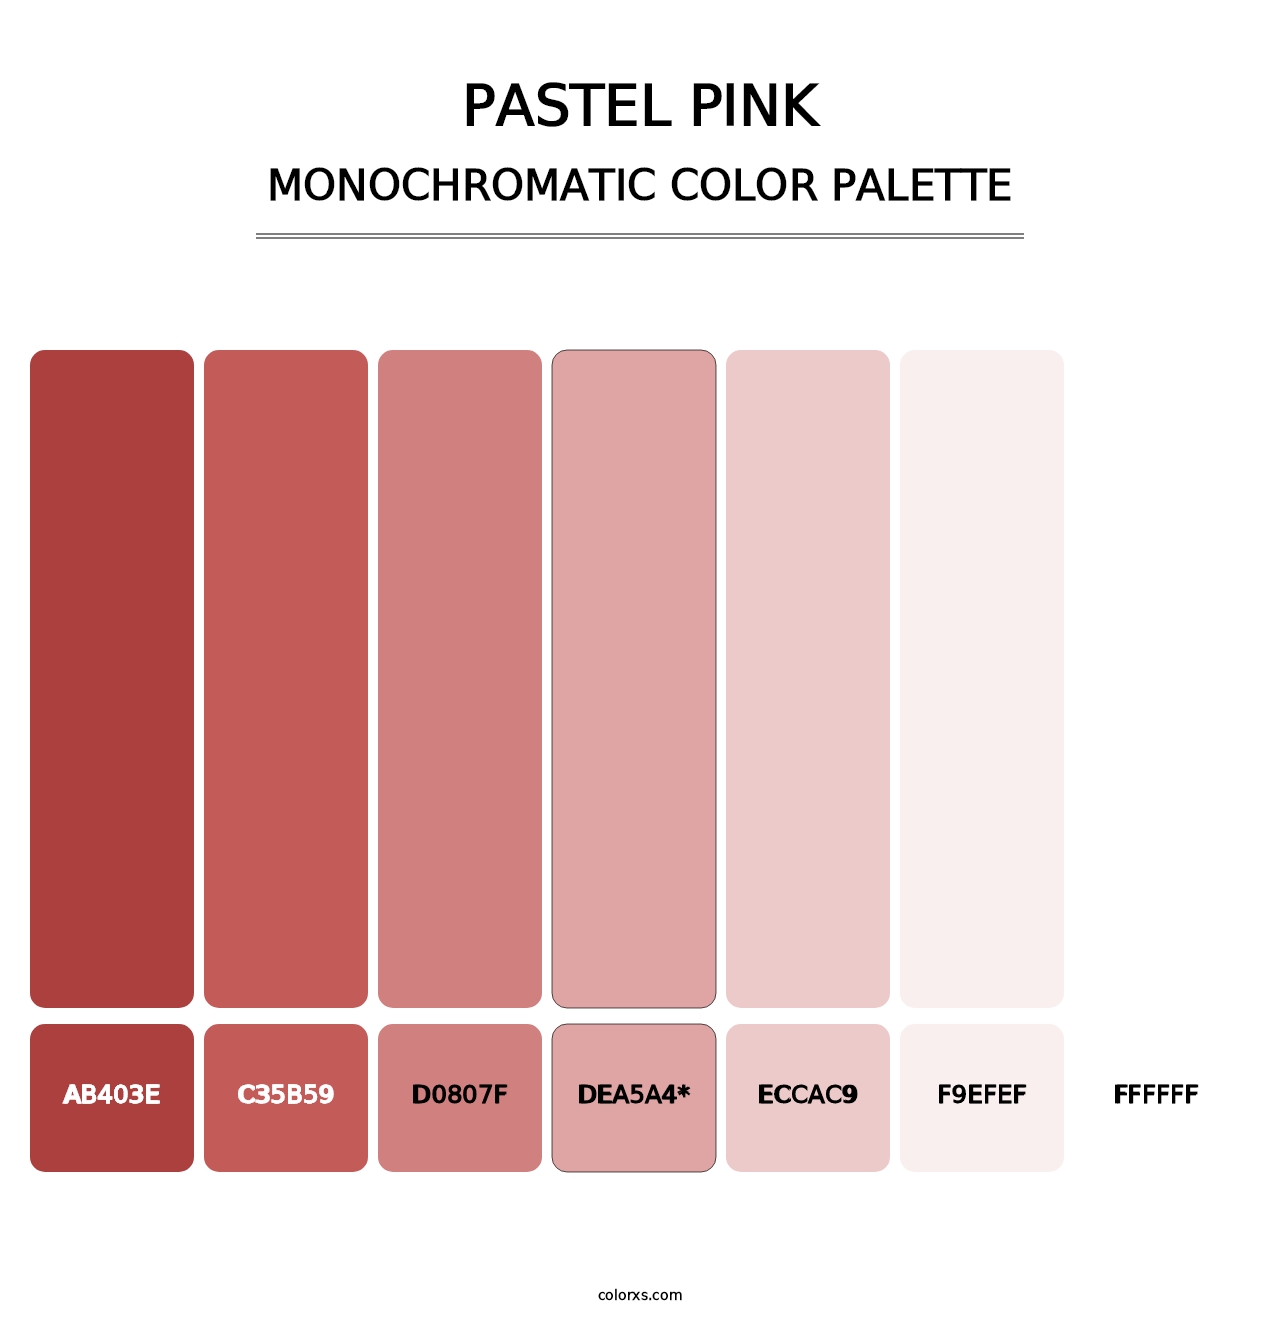 Pastel Pink - Monochromatic Color Palette